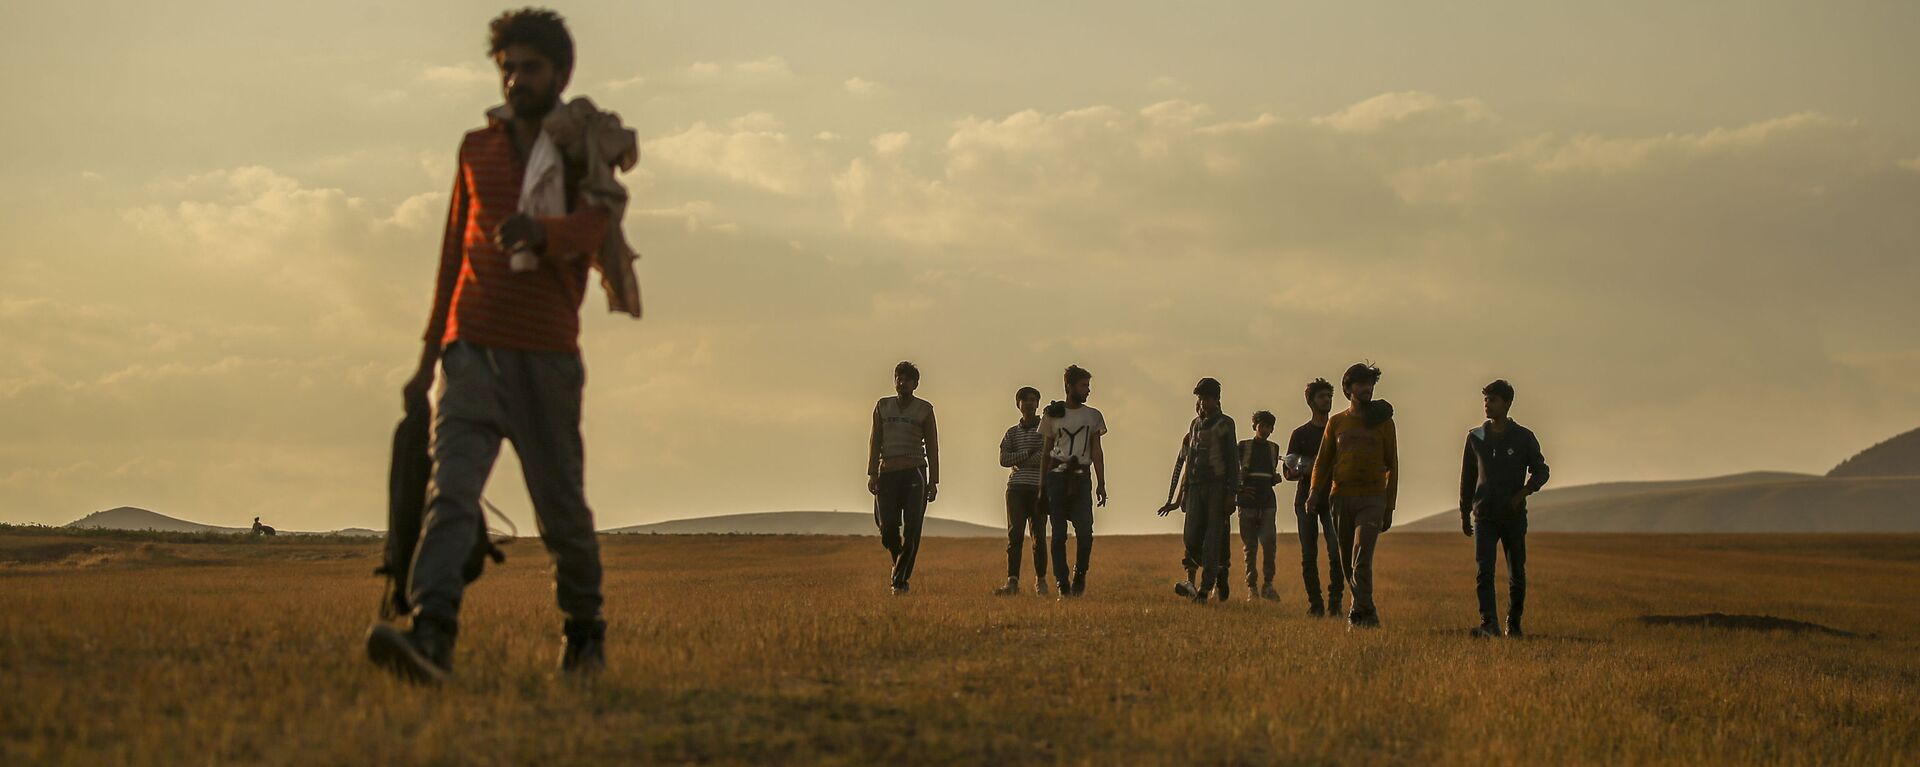 Афганцы гуляют по сельской местности в Татване, Турция  - Sputnik Таджикистан, 1920, 26.08.2021